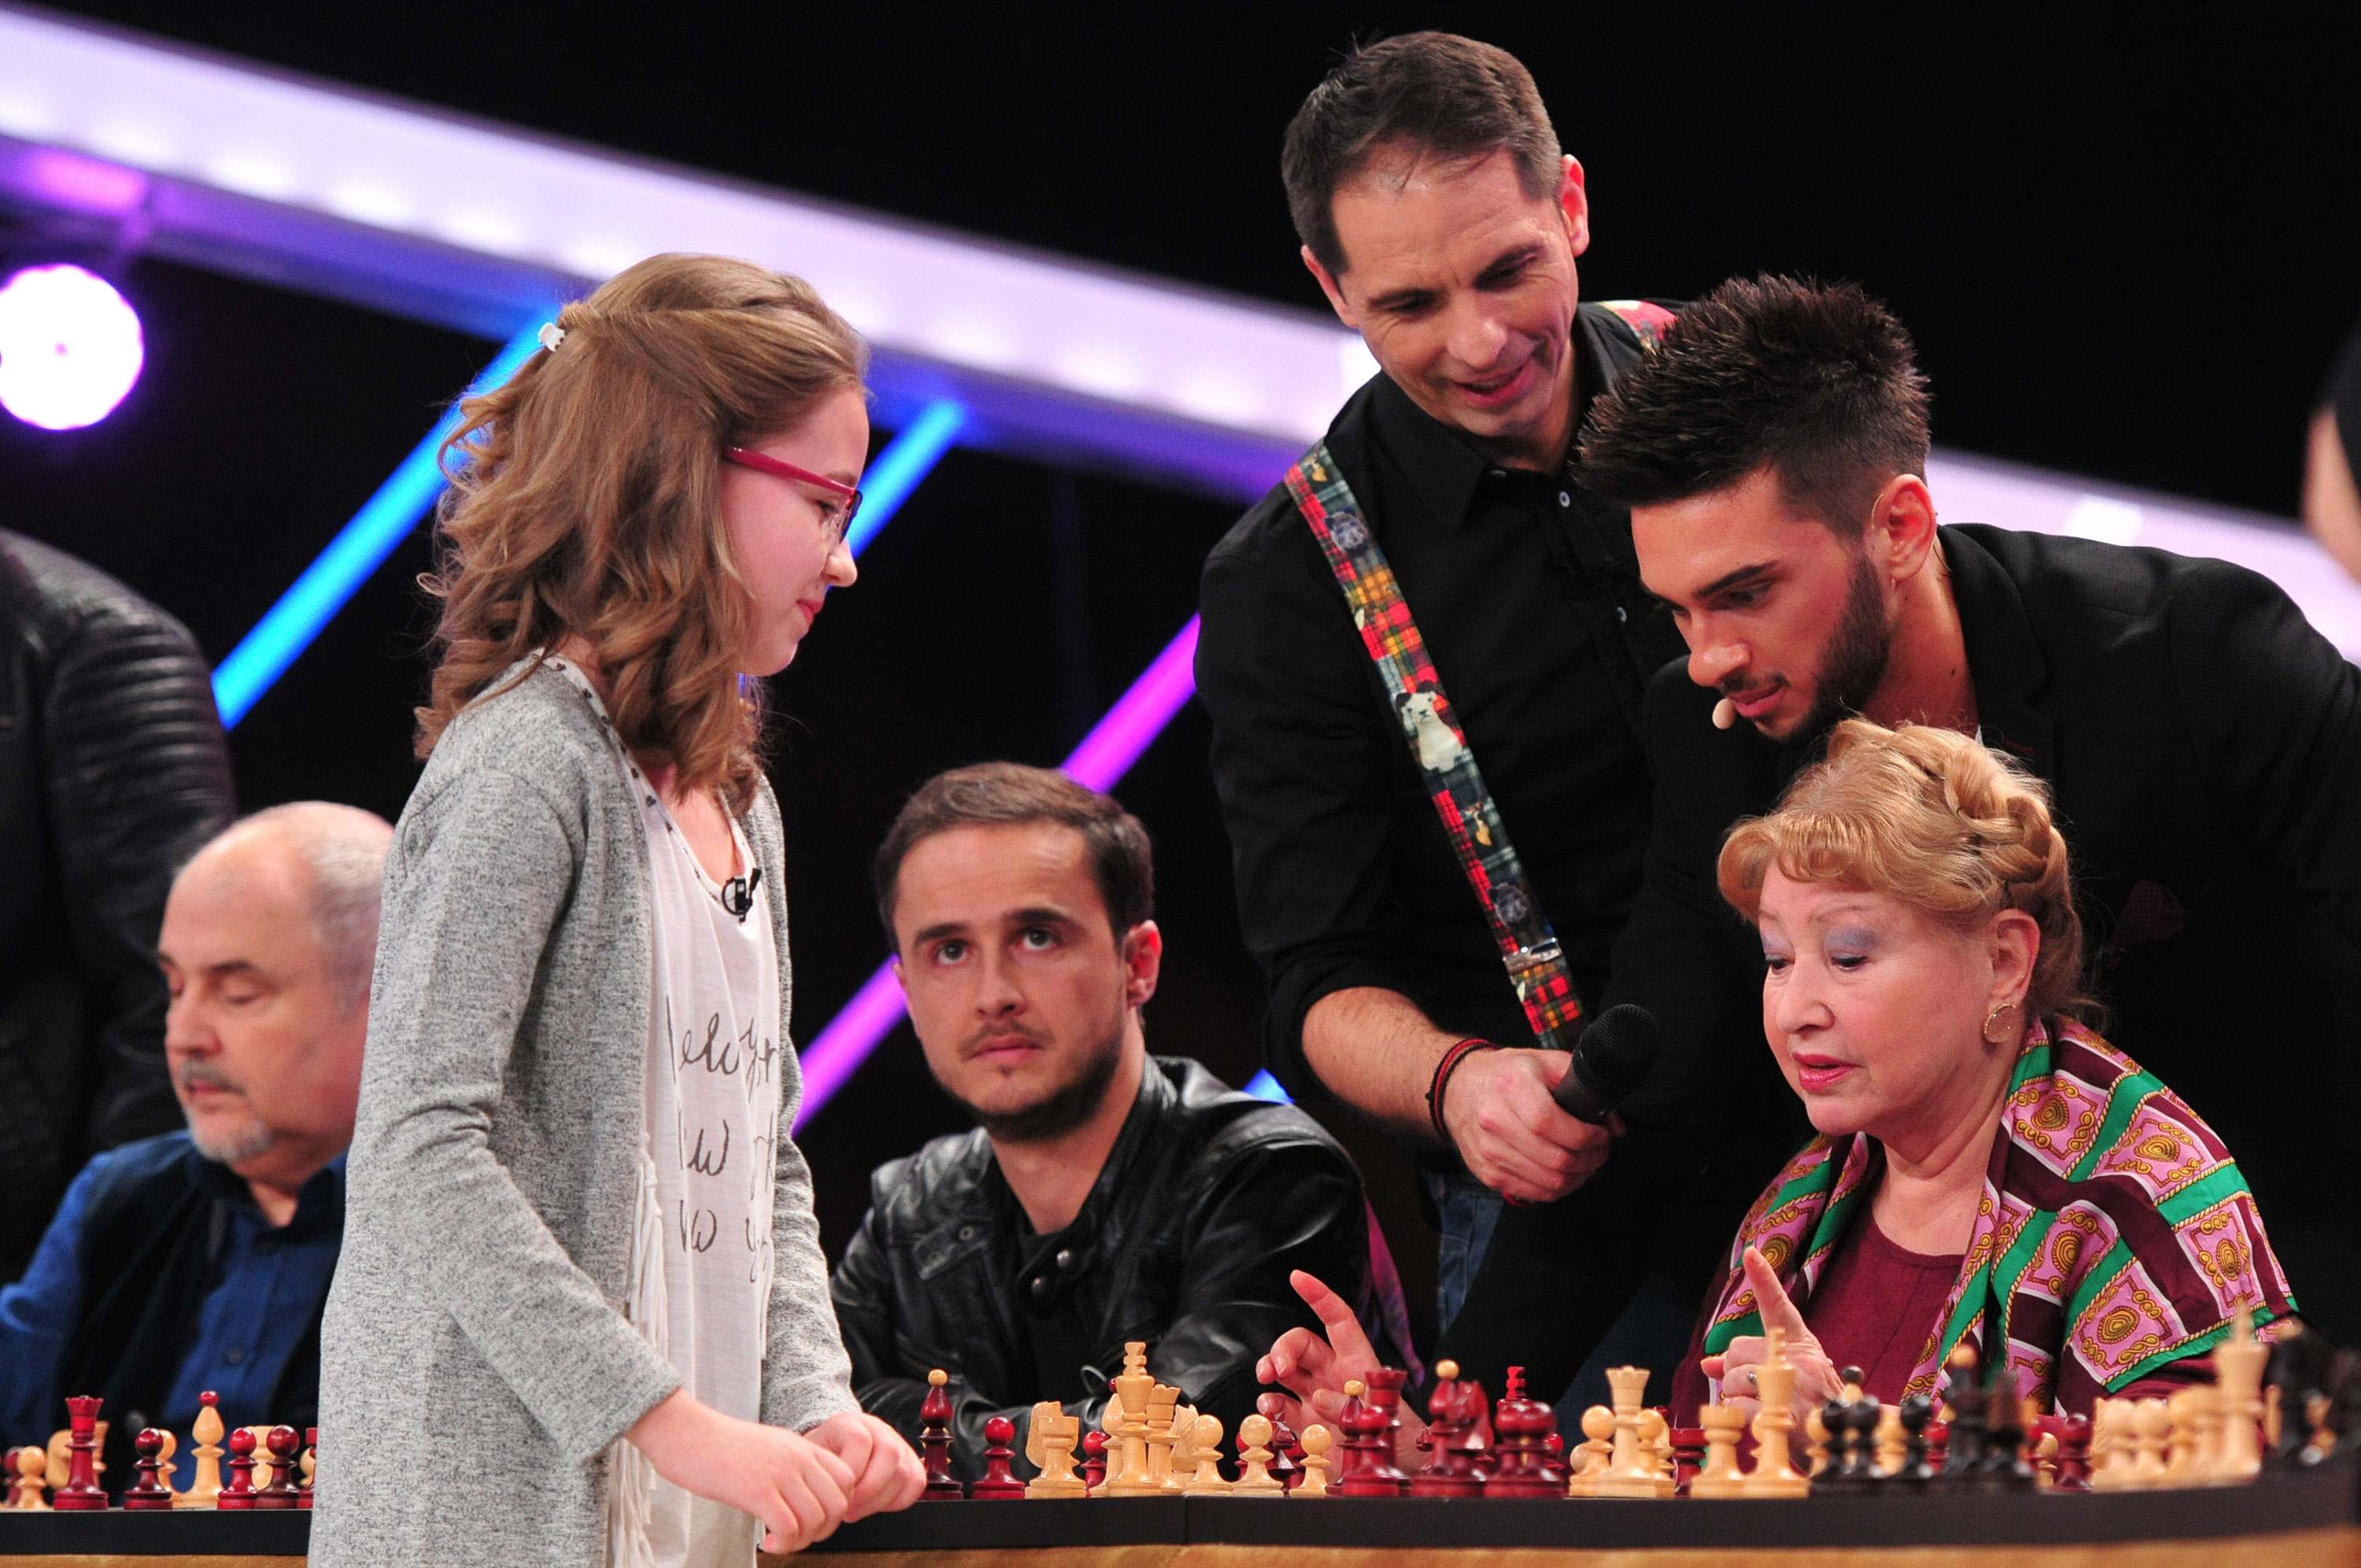 Situația este tristă și amară! Ema Obada, campioană europeană la șah, învinge şapte vedete pe scena 